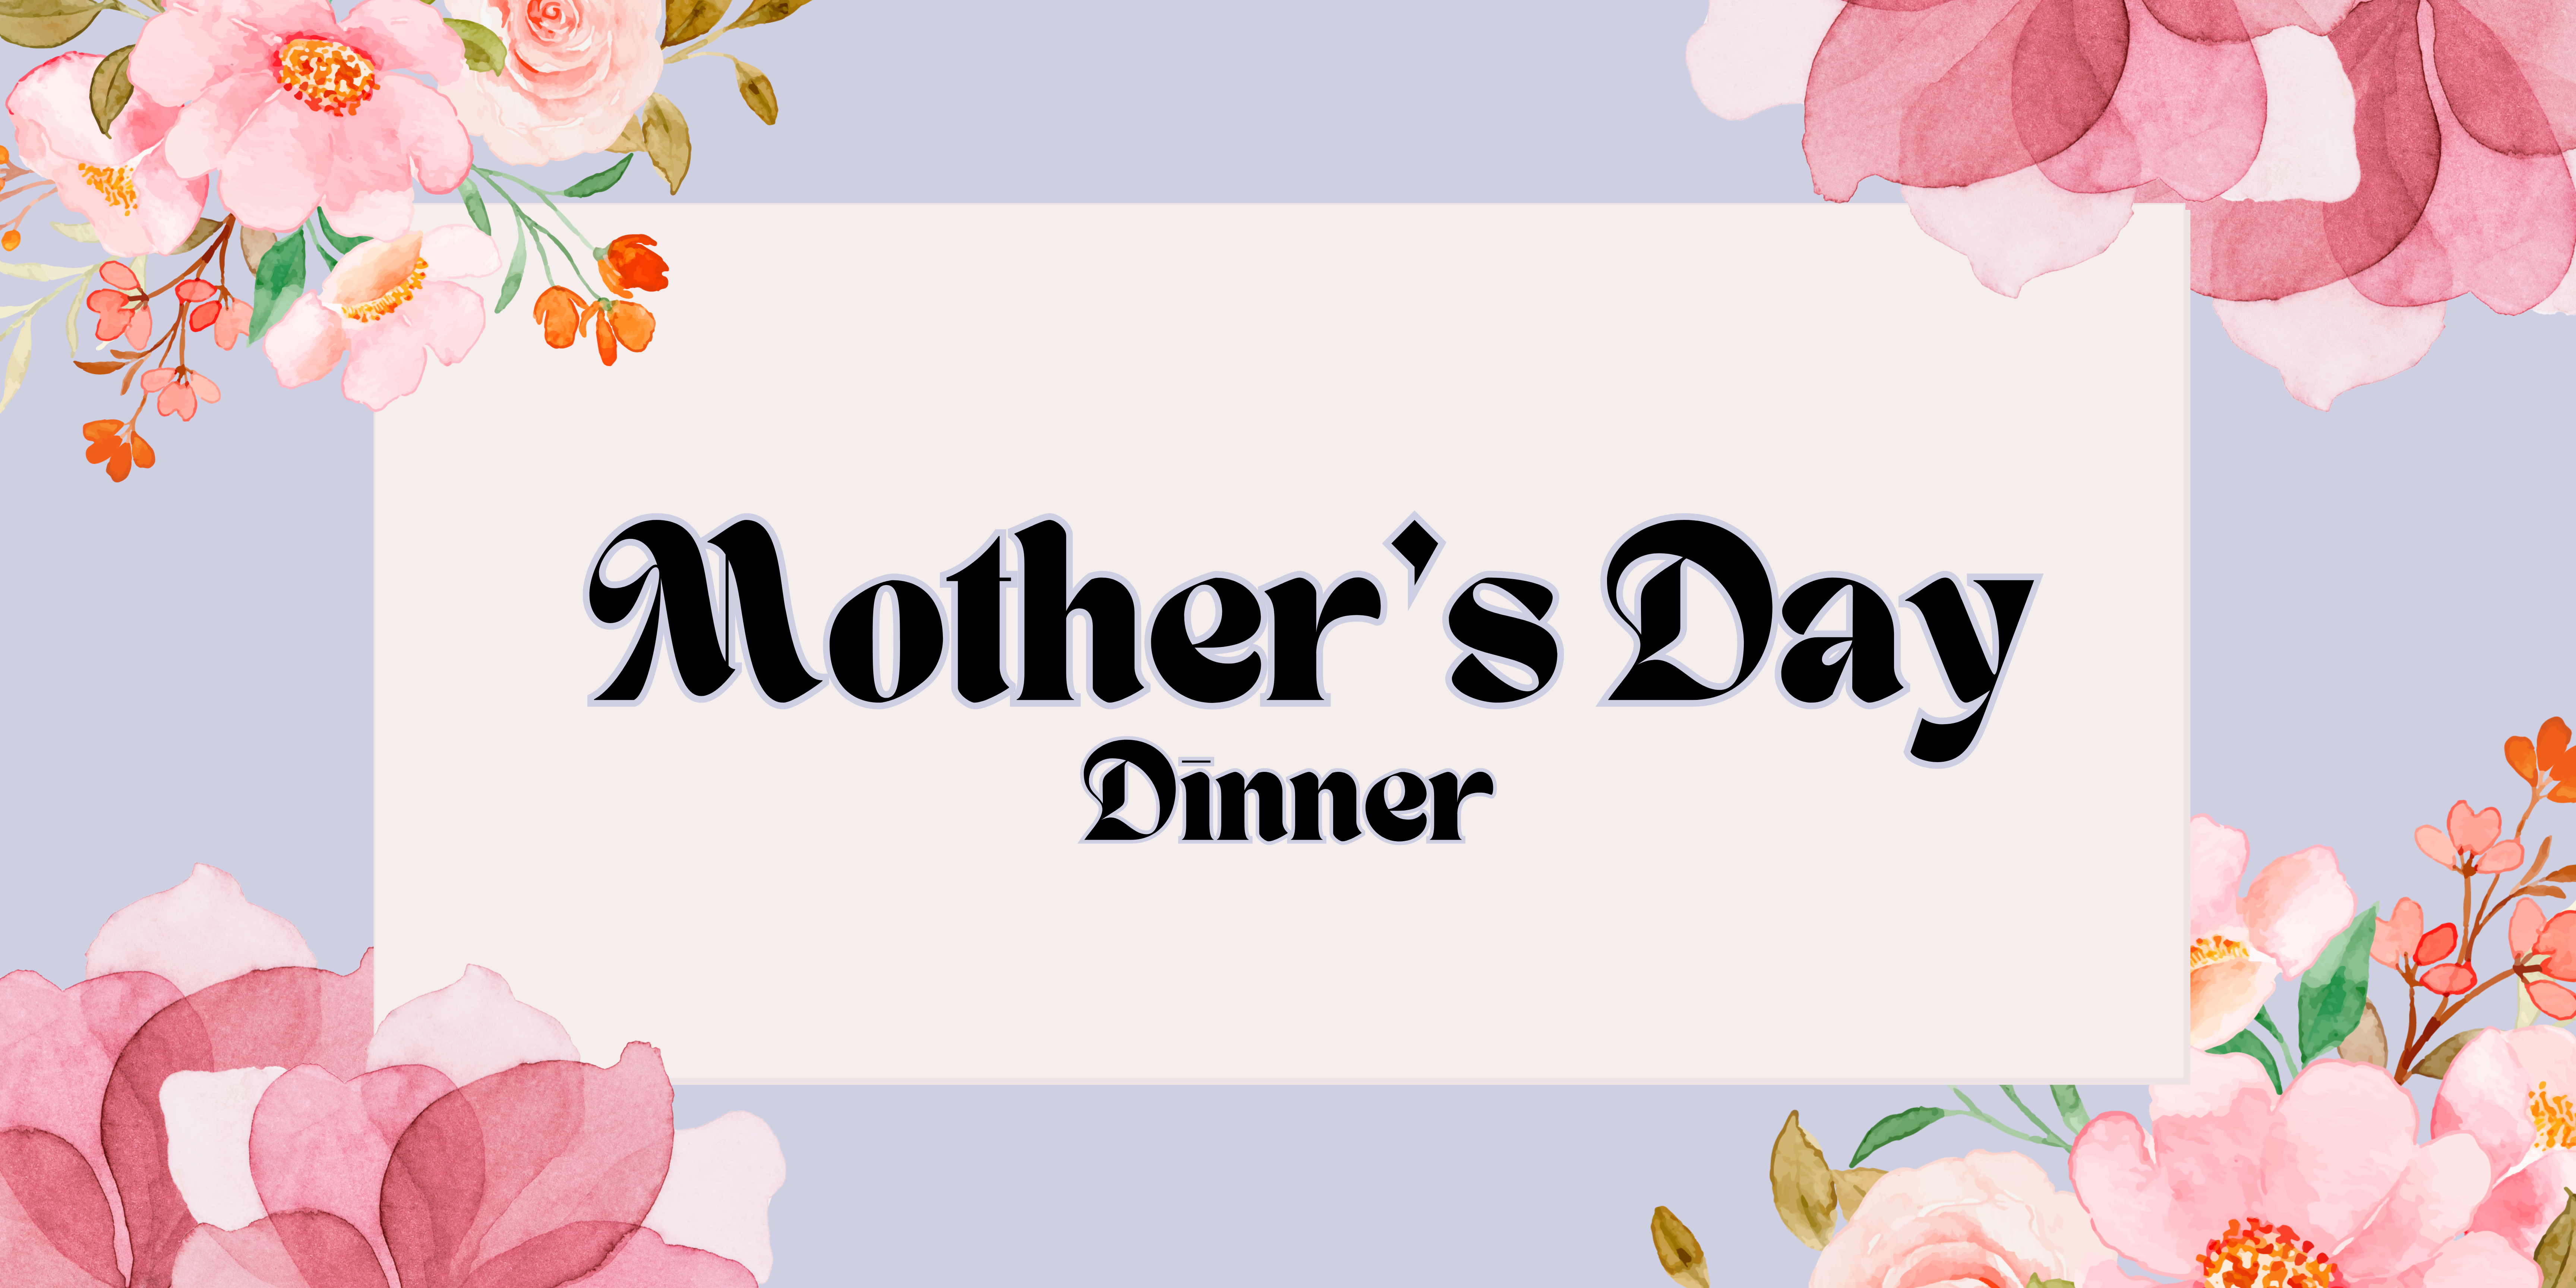 Mother’s day dinner banner